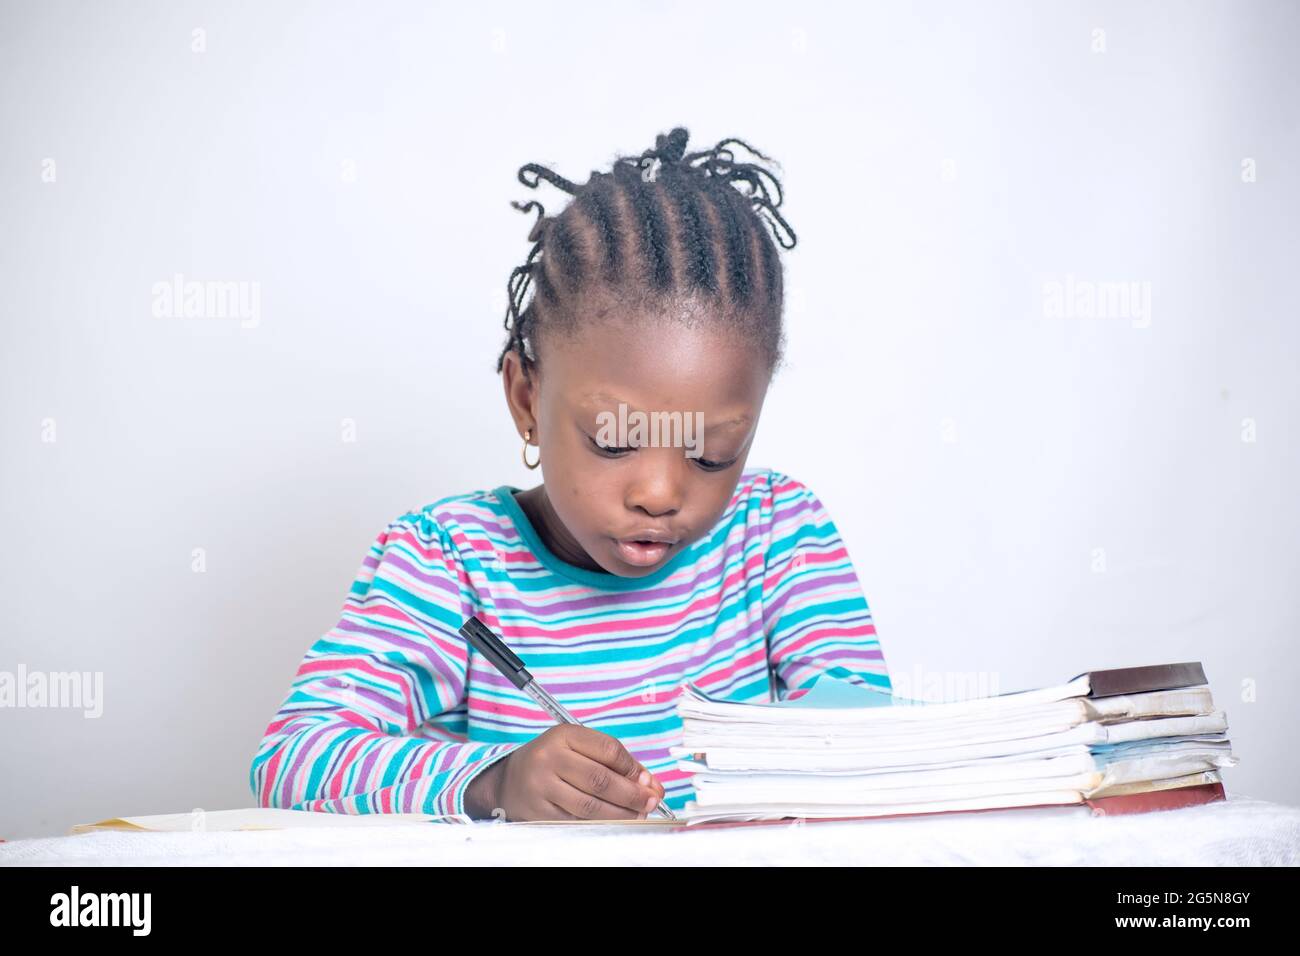 Nahaufnahme eines Bildungstisches eines afrikanischen Mädchens mit gewebter Frisur, das auf einem Lerntisch schreibt, während es Bücher und einen Blumenkorb von ihr hat Stockfoto